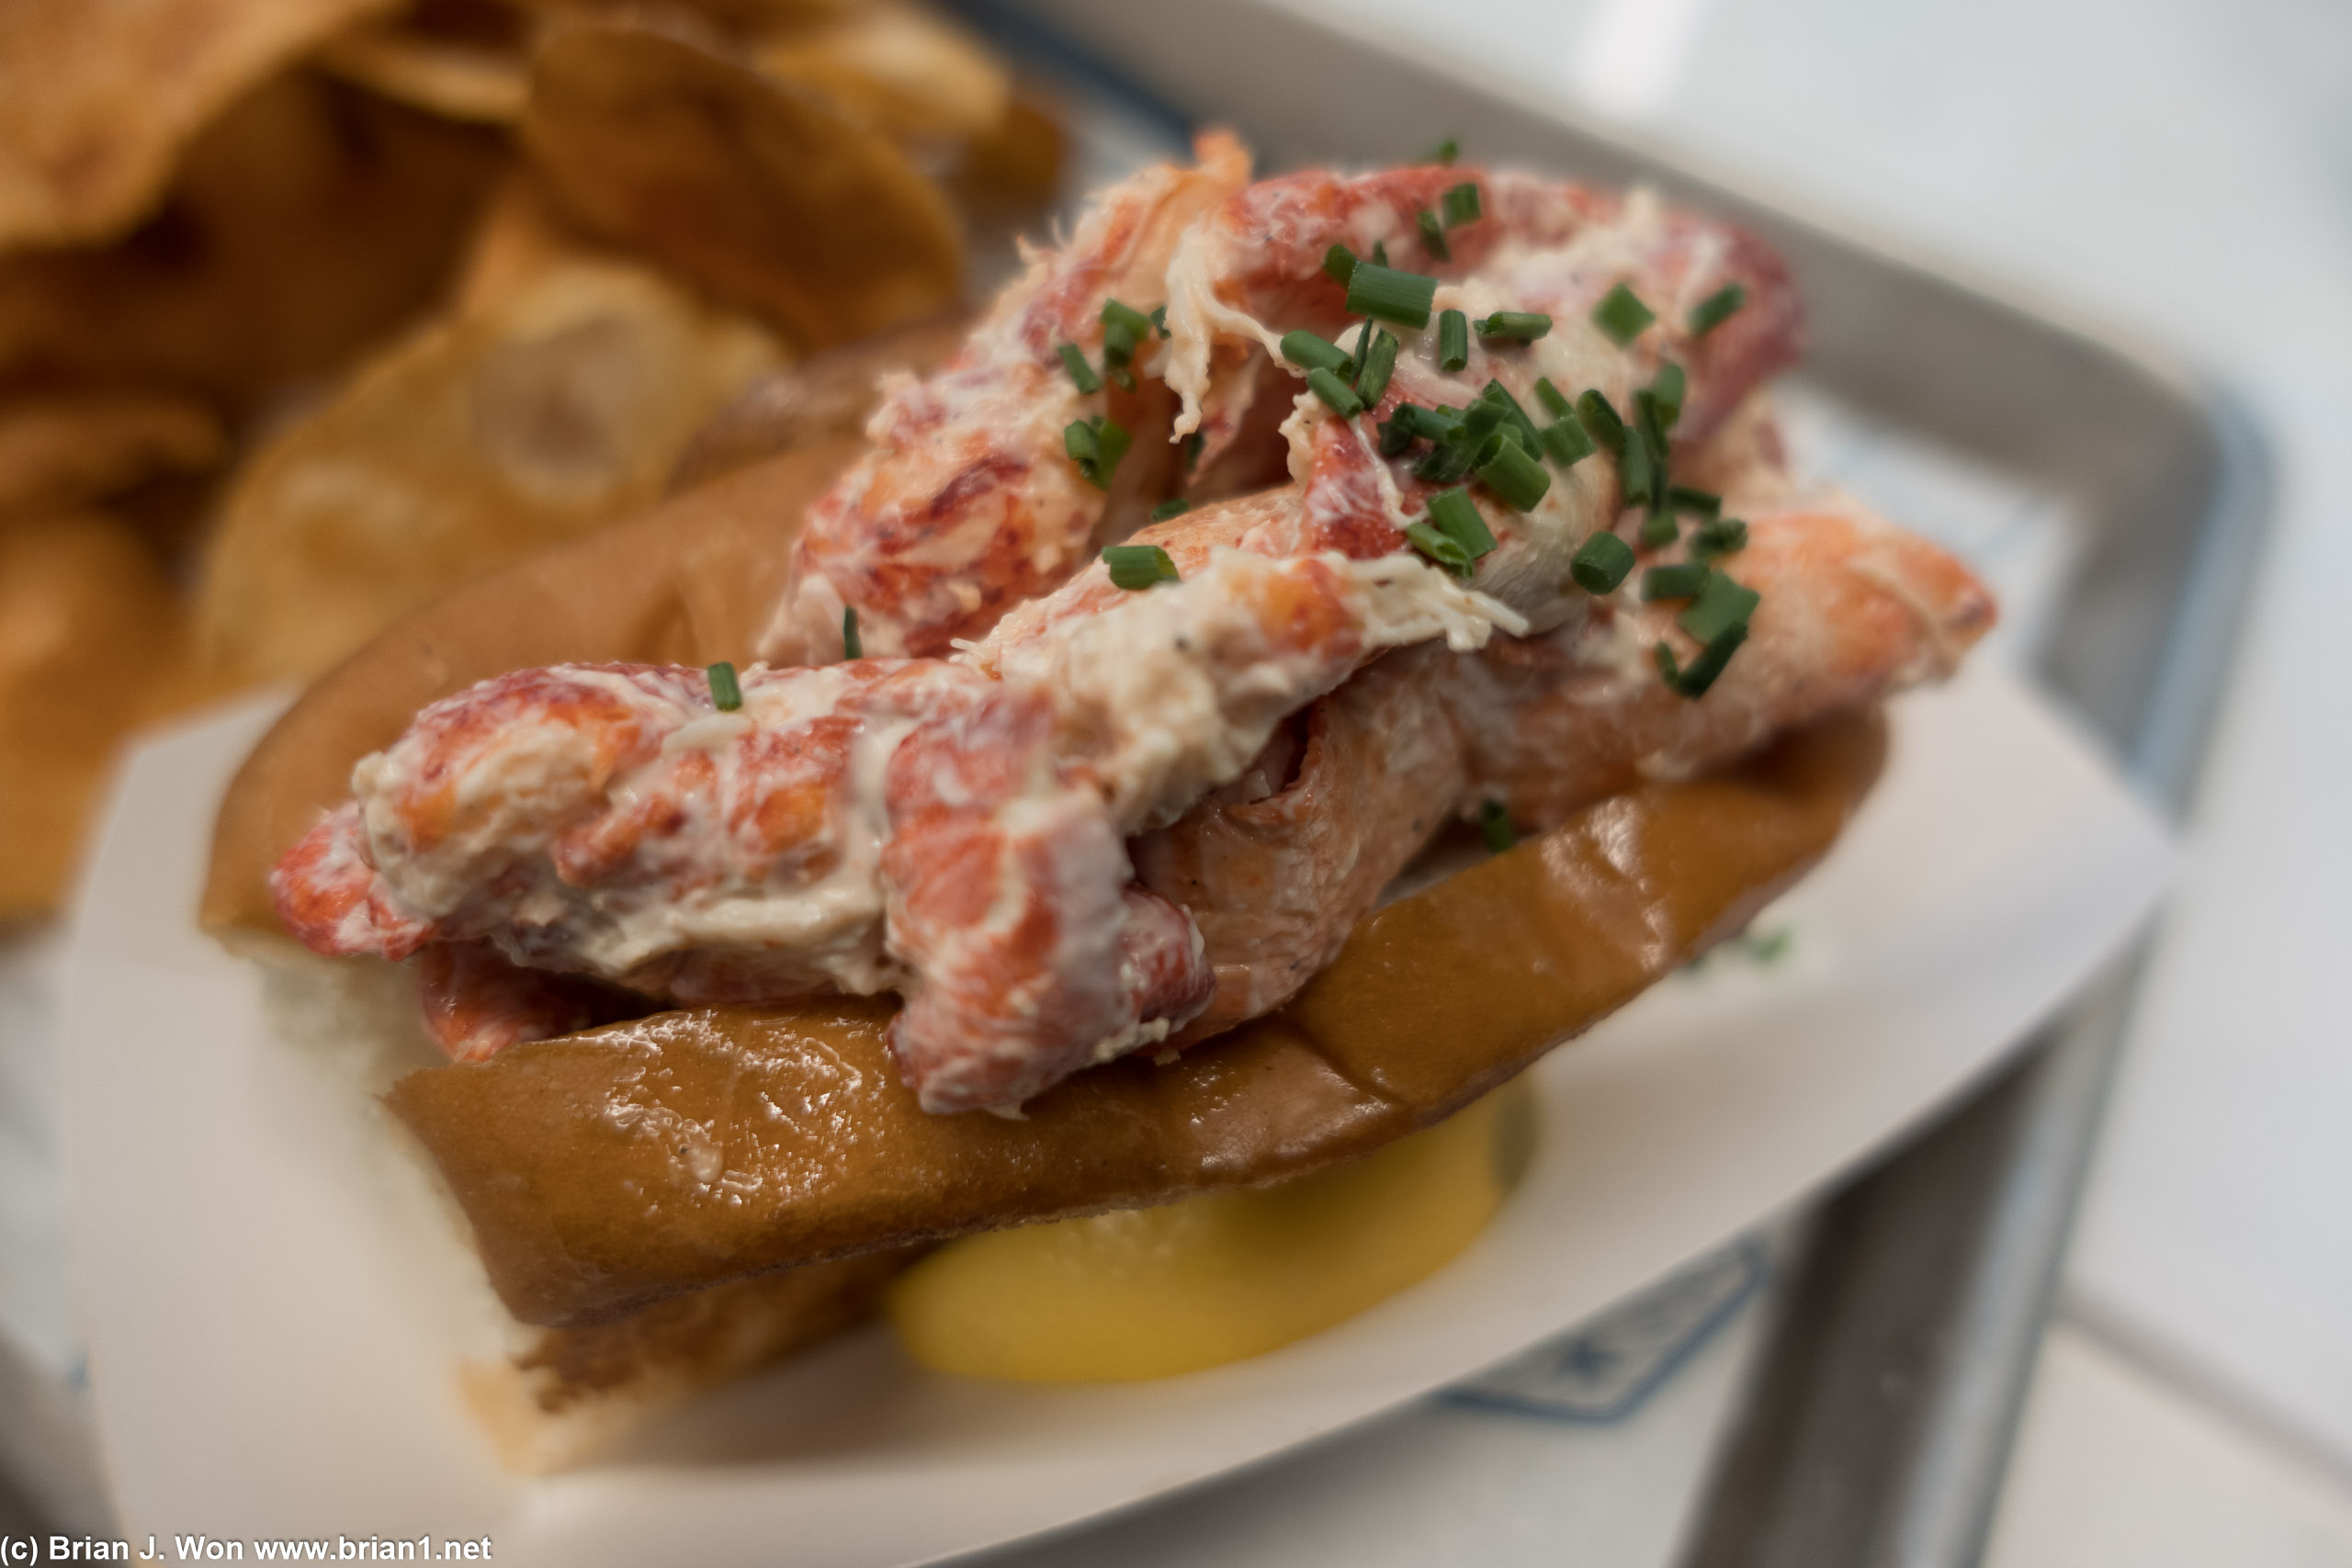 Lobster roll was legit. Chips were meh-- served plain, not a fan.